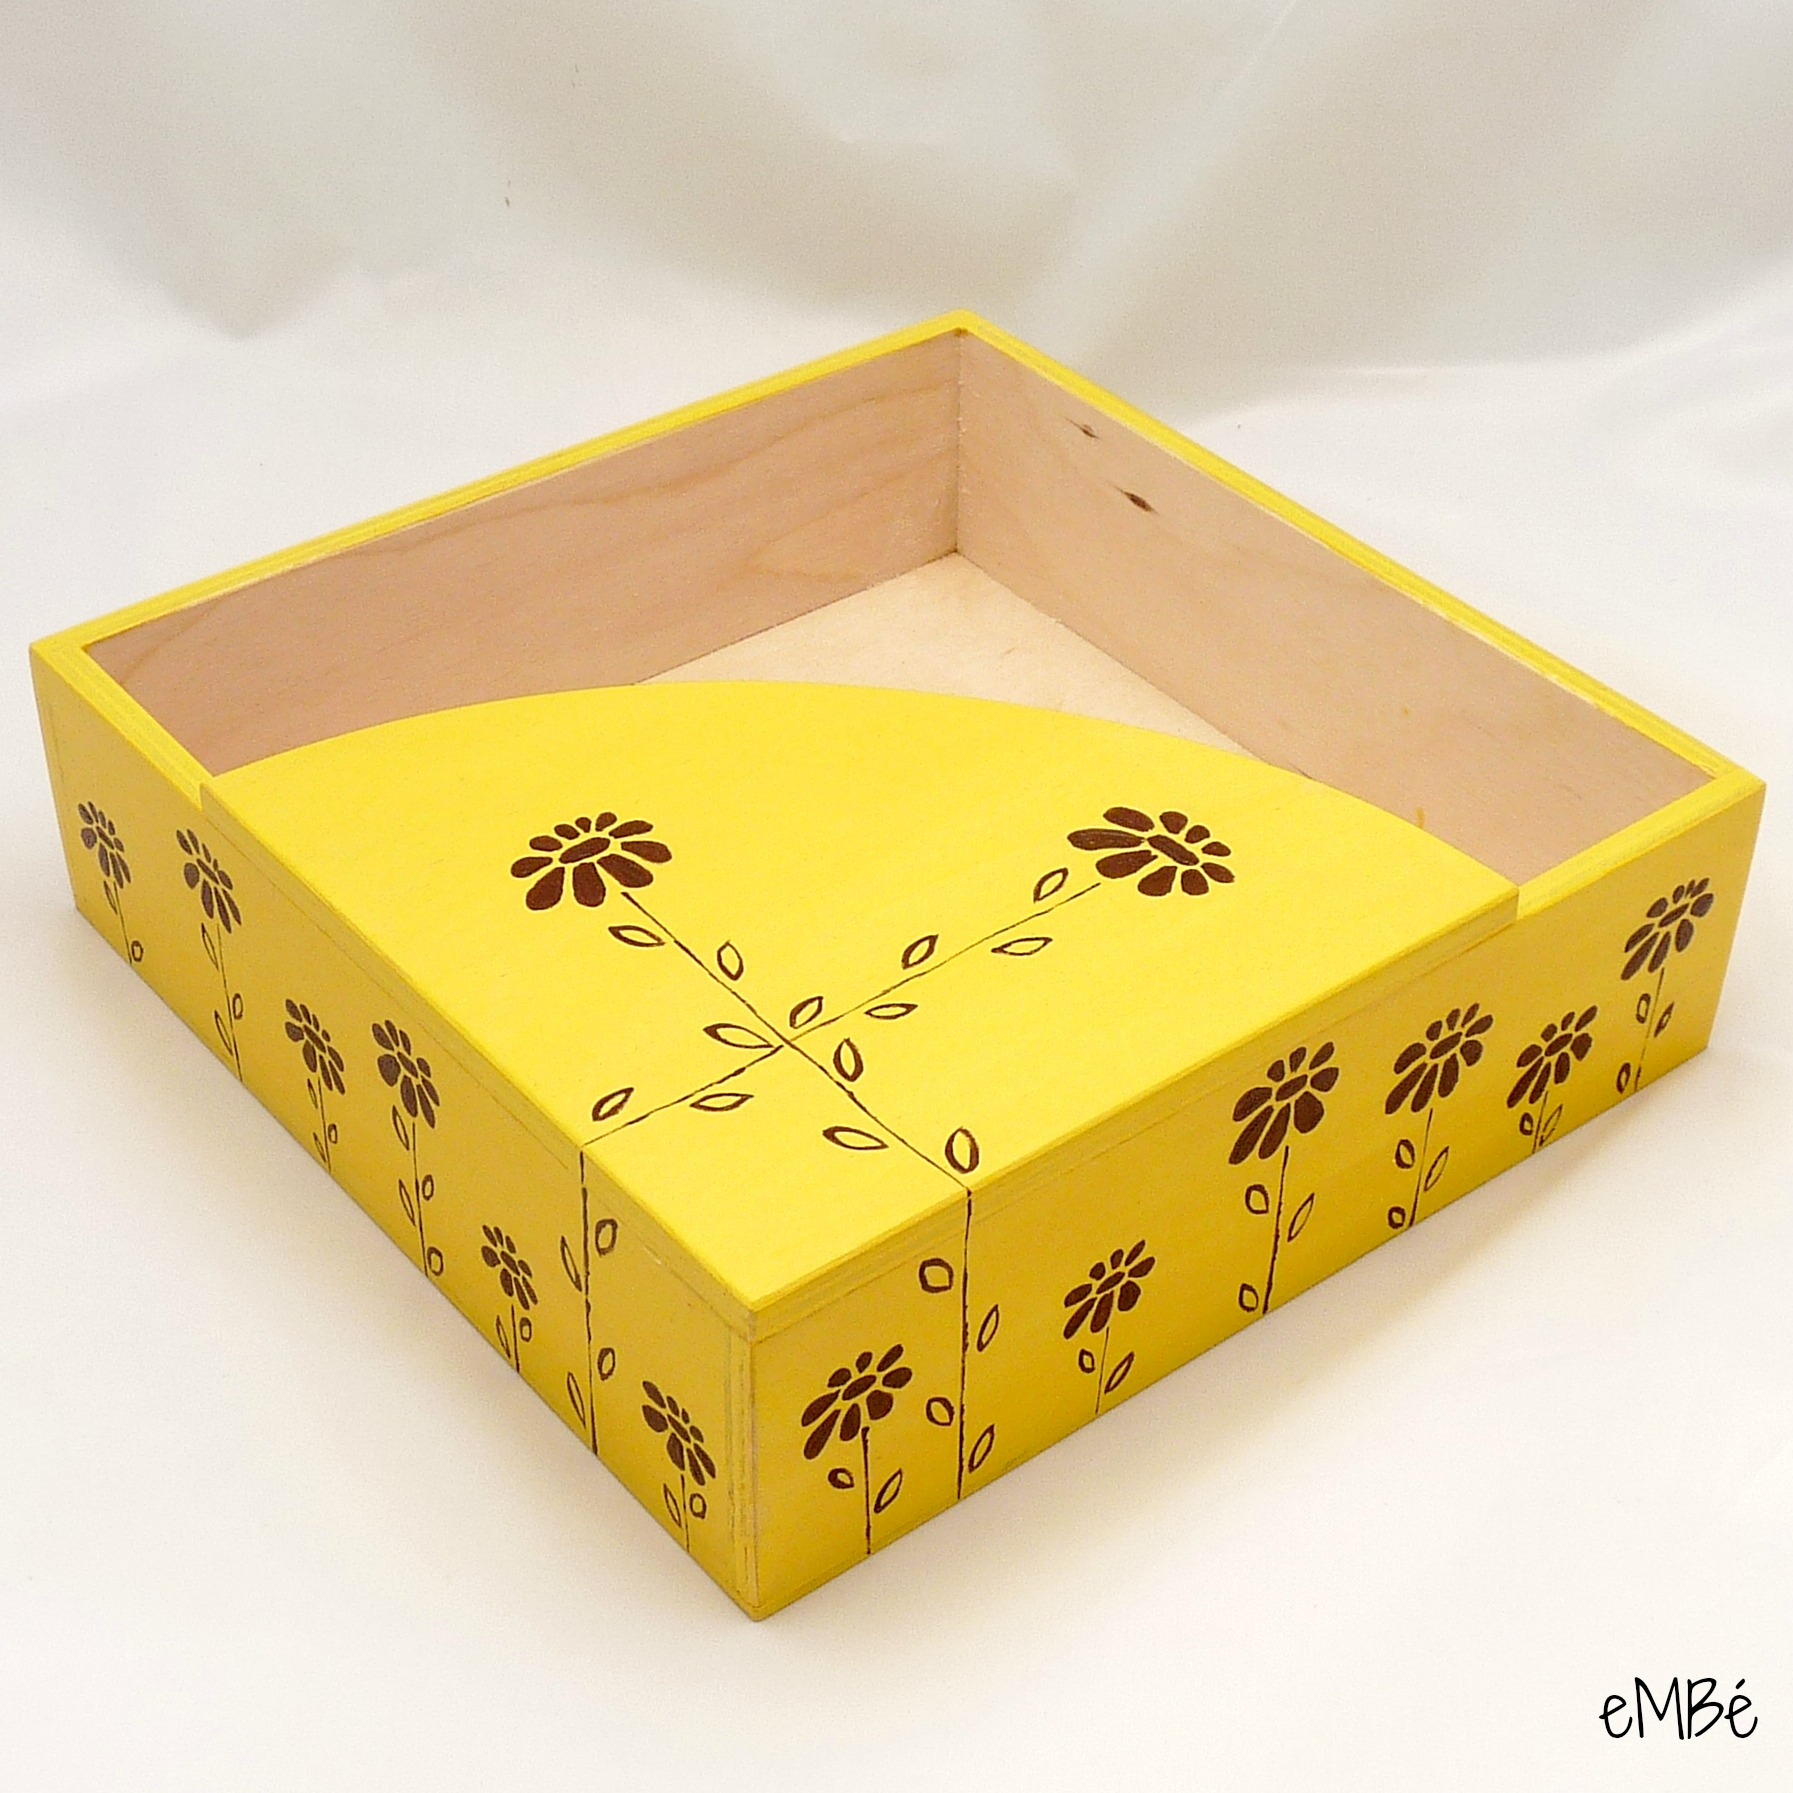 2.3 Krabička na ubrousky - Žlutá, rozkvetlá...